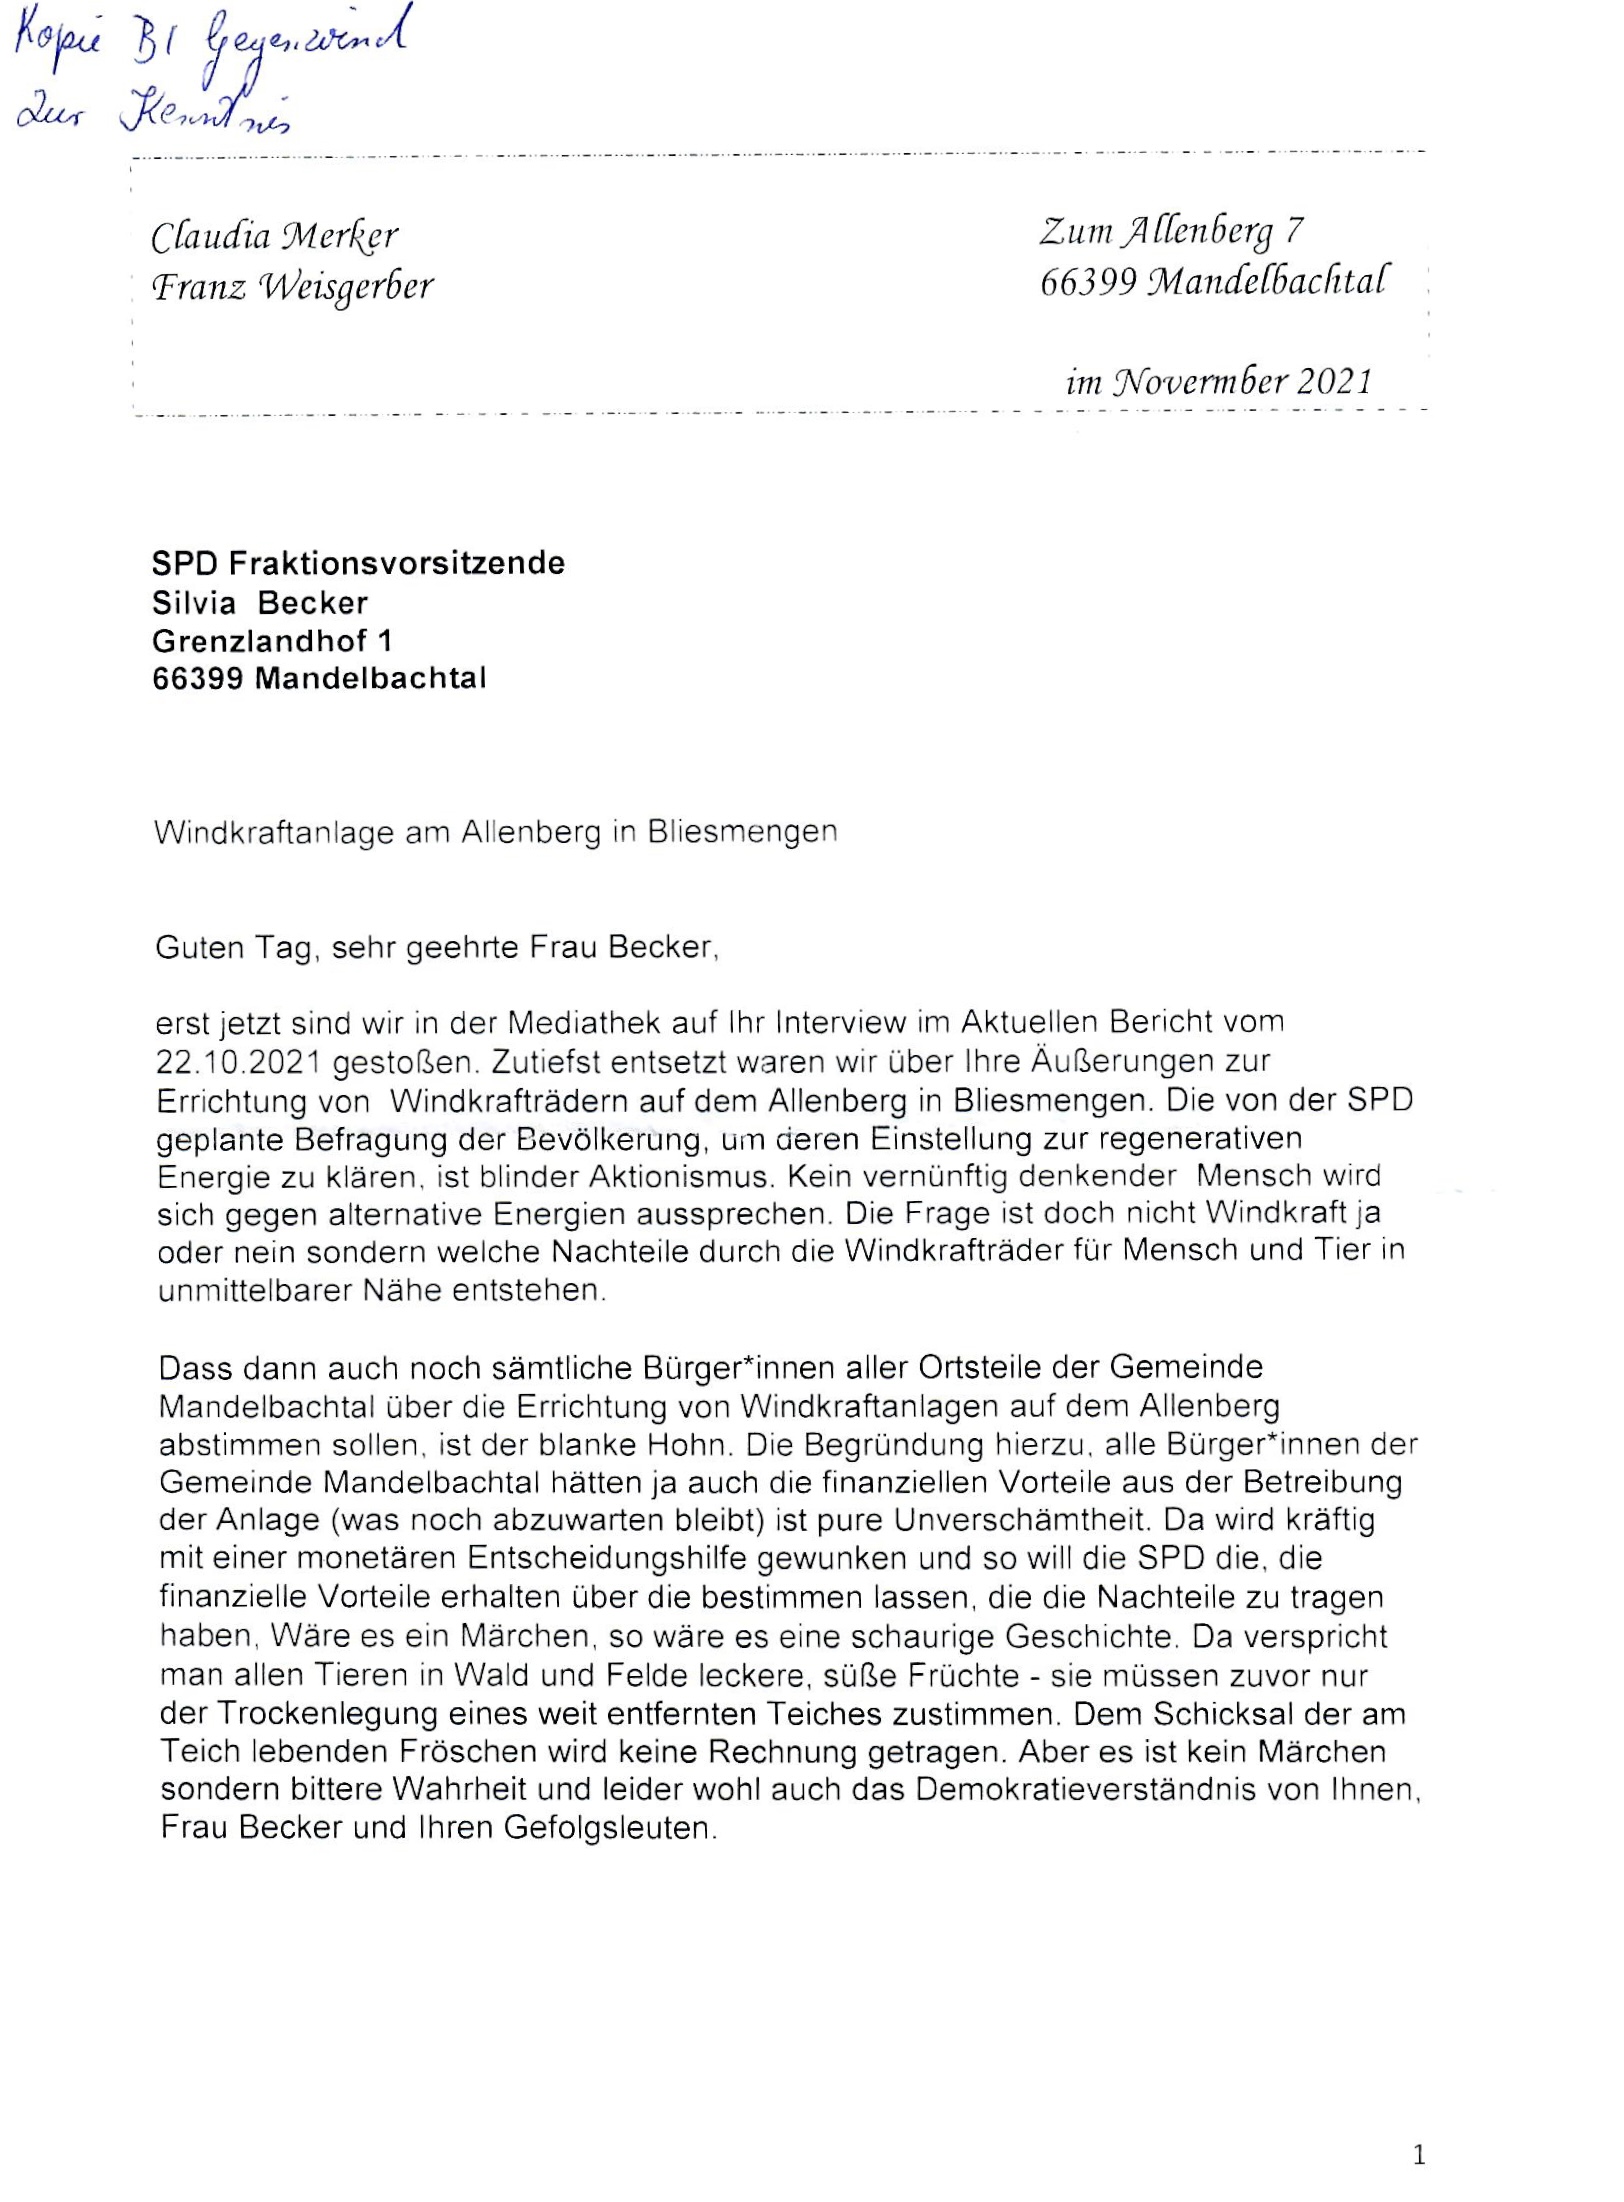 Offener Brief an die SPD Fraktionsvorsitzende im Gemeinderat zum Thema Windkraftwerke auf dem Allenberg.